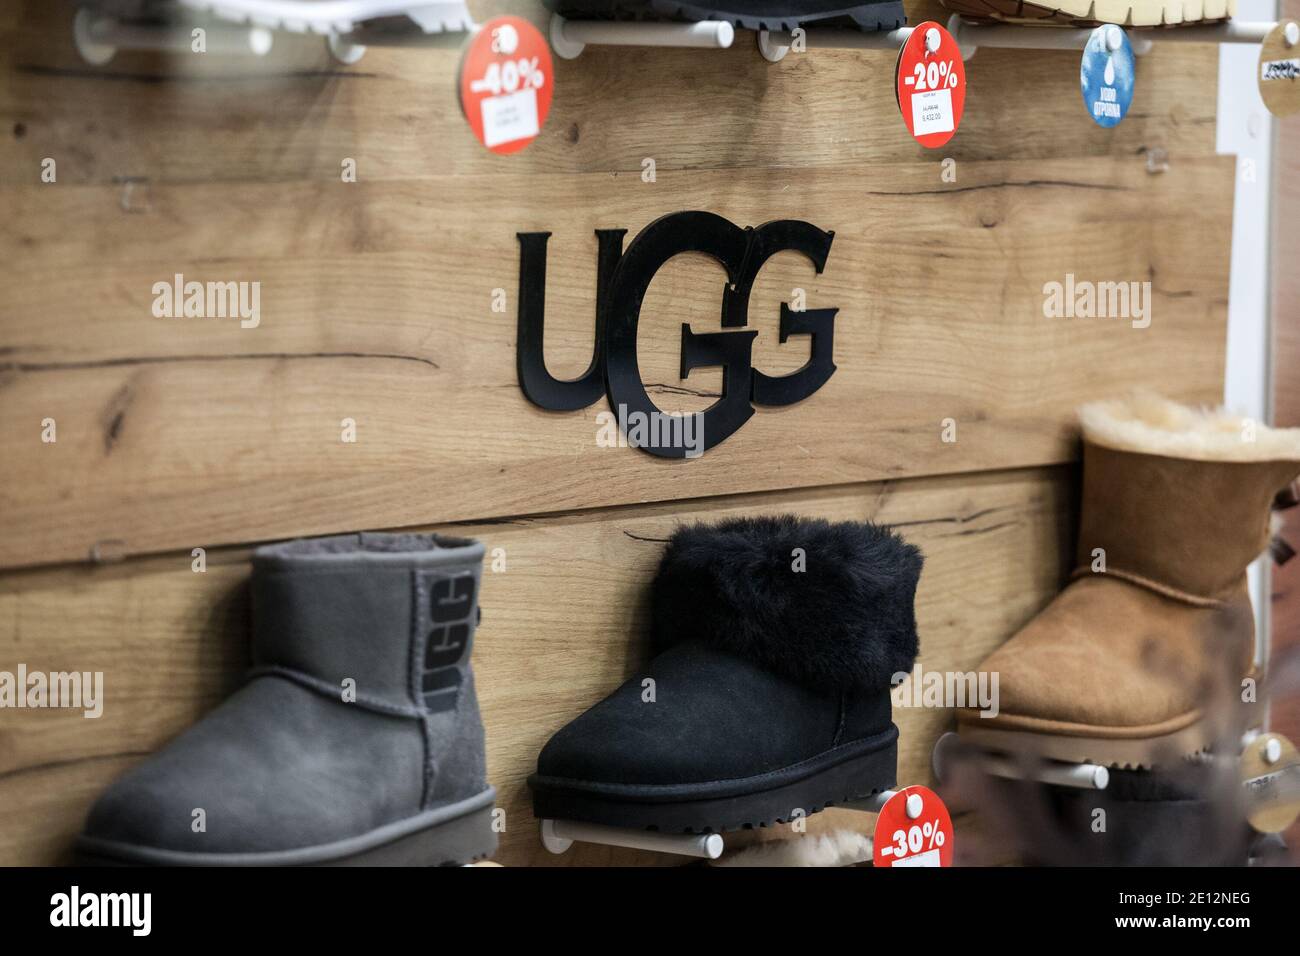 BELGRADO, SERBIA - 8 DICEMBRE 2020: Logo Ugg davanti ad alcuni dei loro  stivali per la vendita in un negozio. Ugg è un marchio americano di  calzature noto per la sua lei